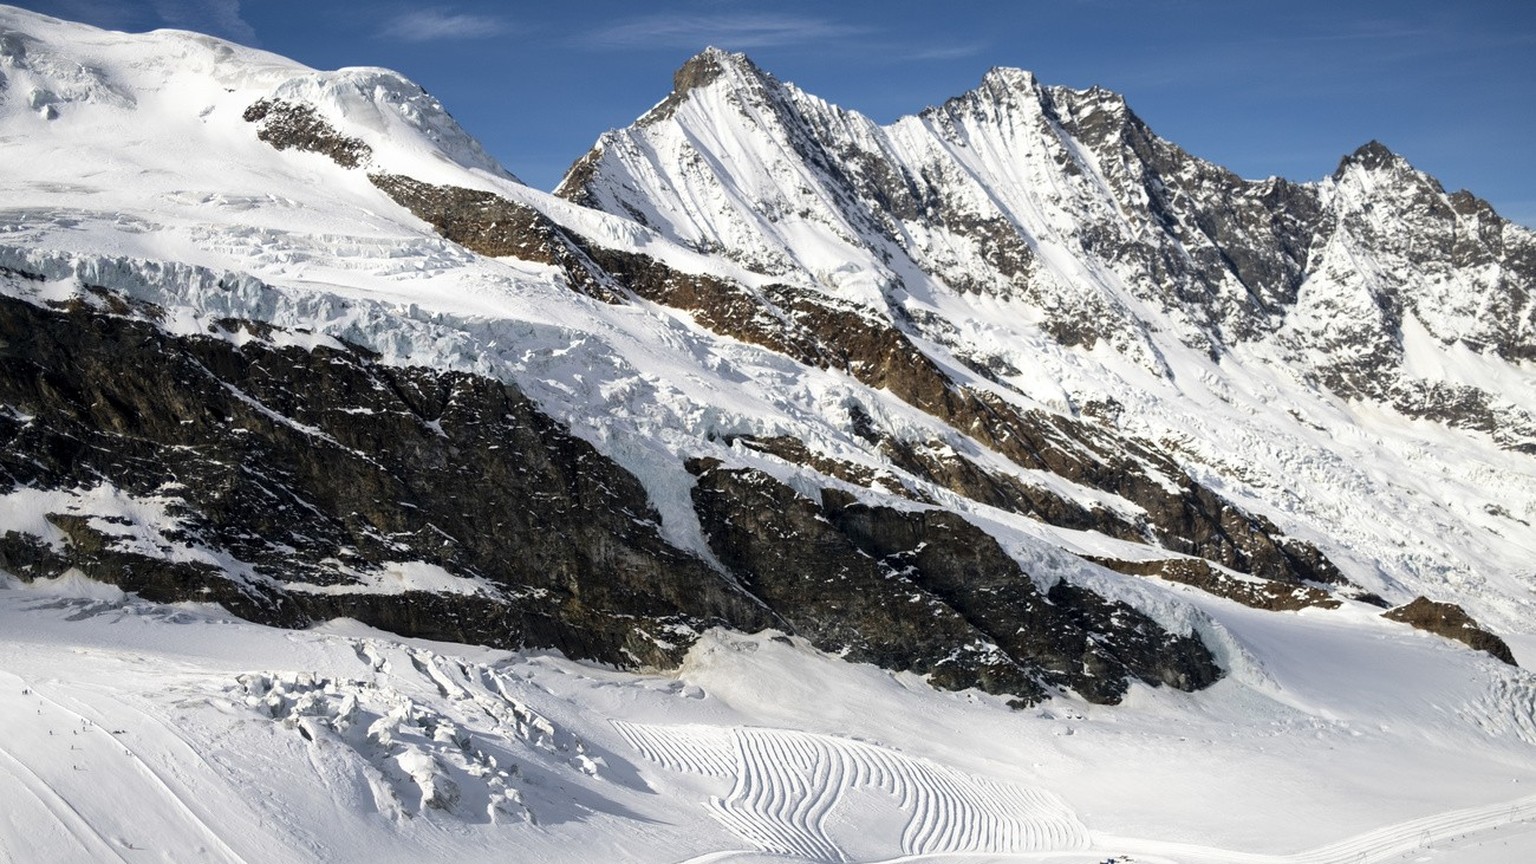 Des skieurs skient sur les pistes de ski du Glacier de Fee devant le massif des montagnes des Mischabels ce vendredi 17 fevrier 2023 a Saas-Fee. (KEYSTONE/Laurent Gillieron)